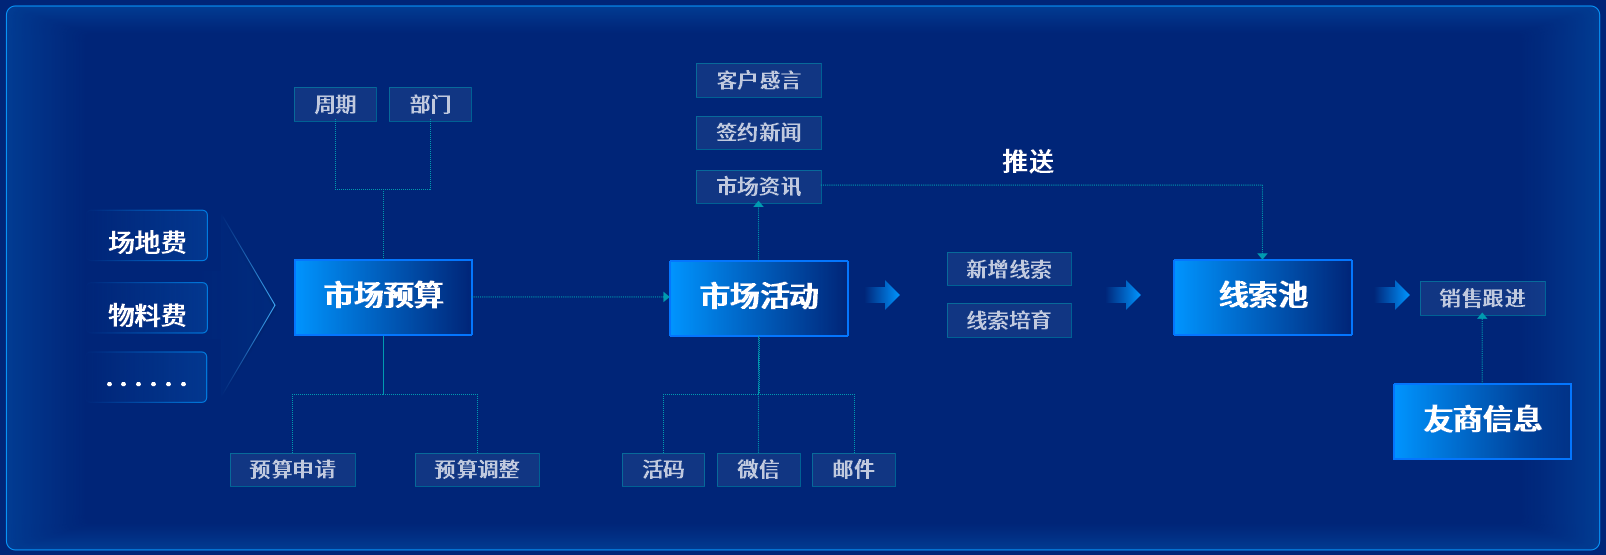 泛微发布数字化营销管理平台-九川汇